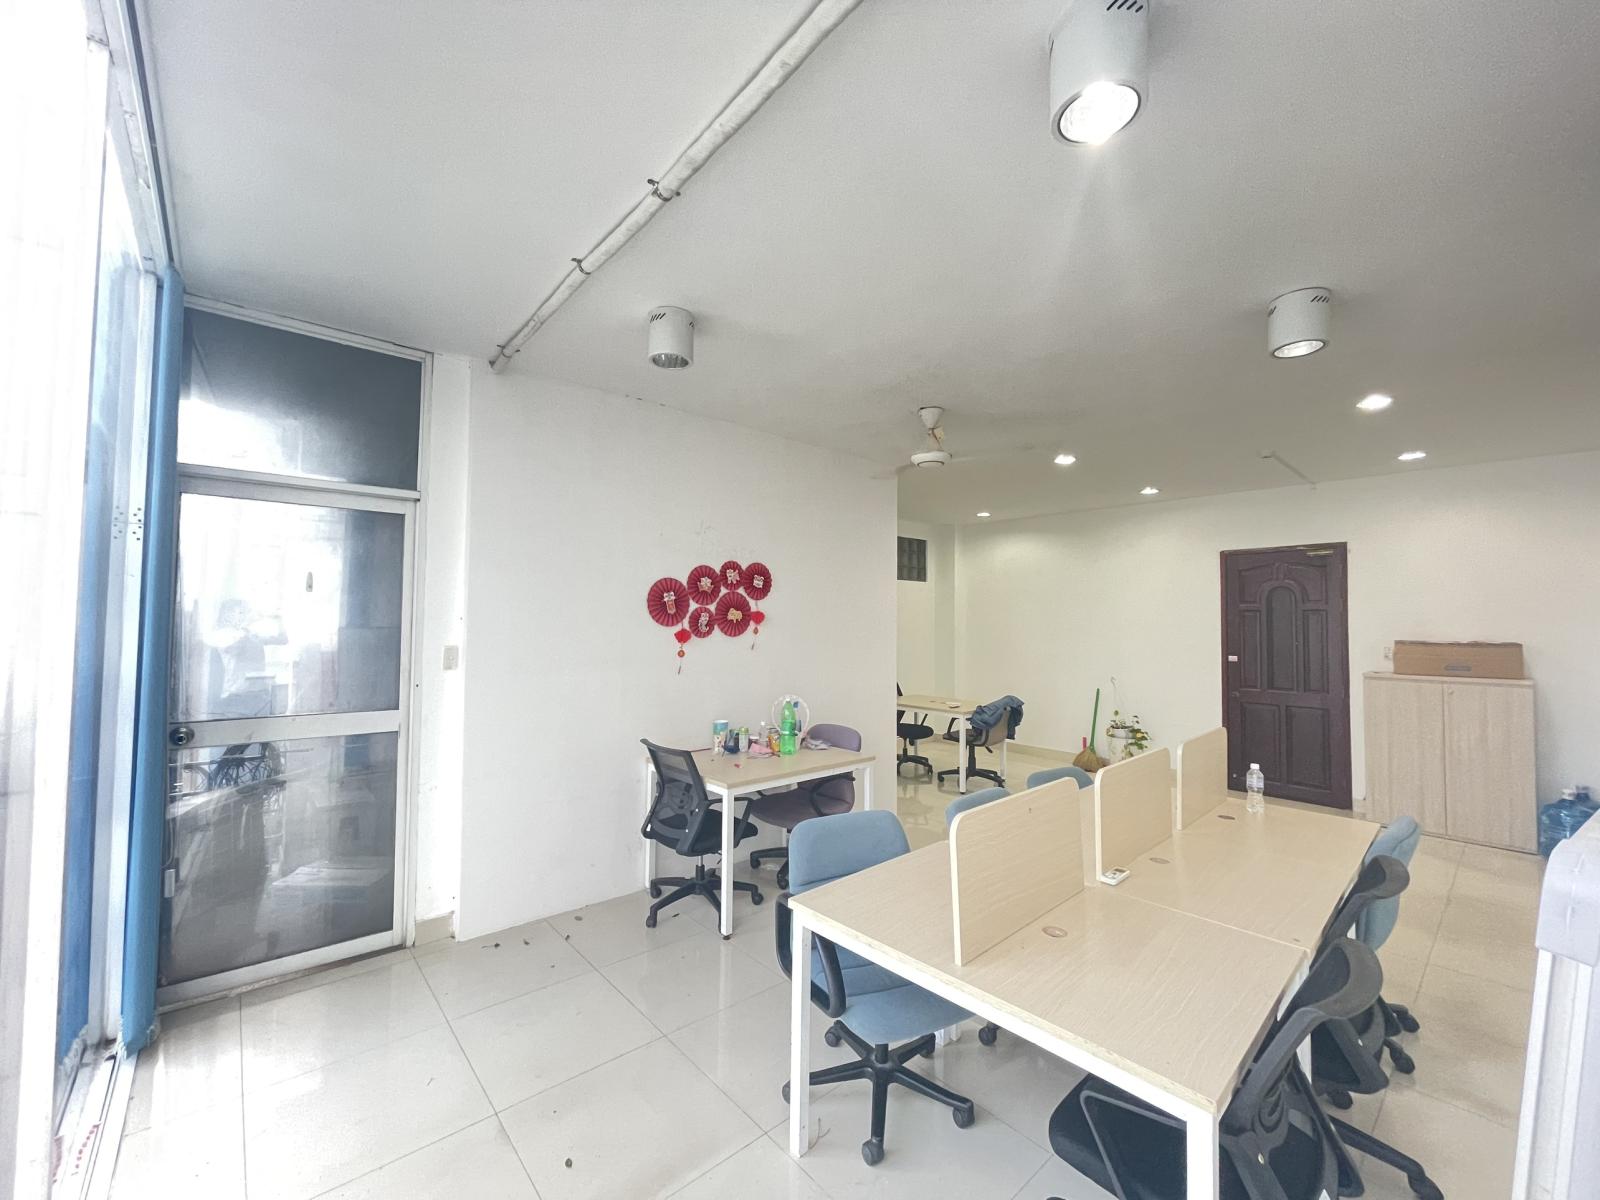 Chính chủ cho thuê văn phòng 40m2 có bàn ghế, view thoáng ở Yên Thế, P2, Tân Bình